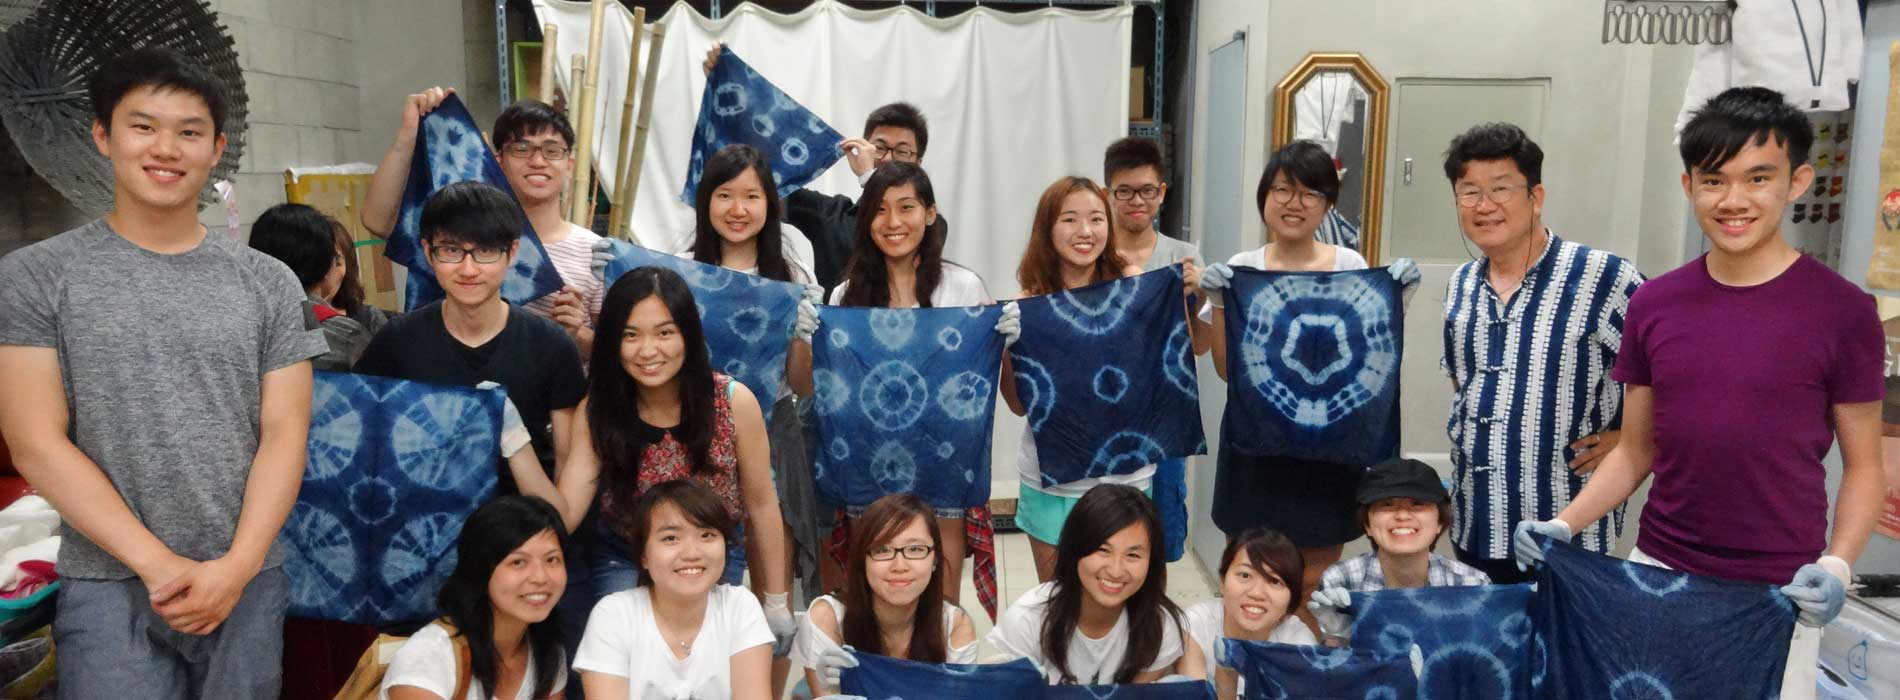 大學青年會香港大學活動推介頁面橫幅